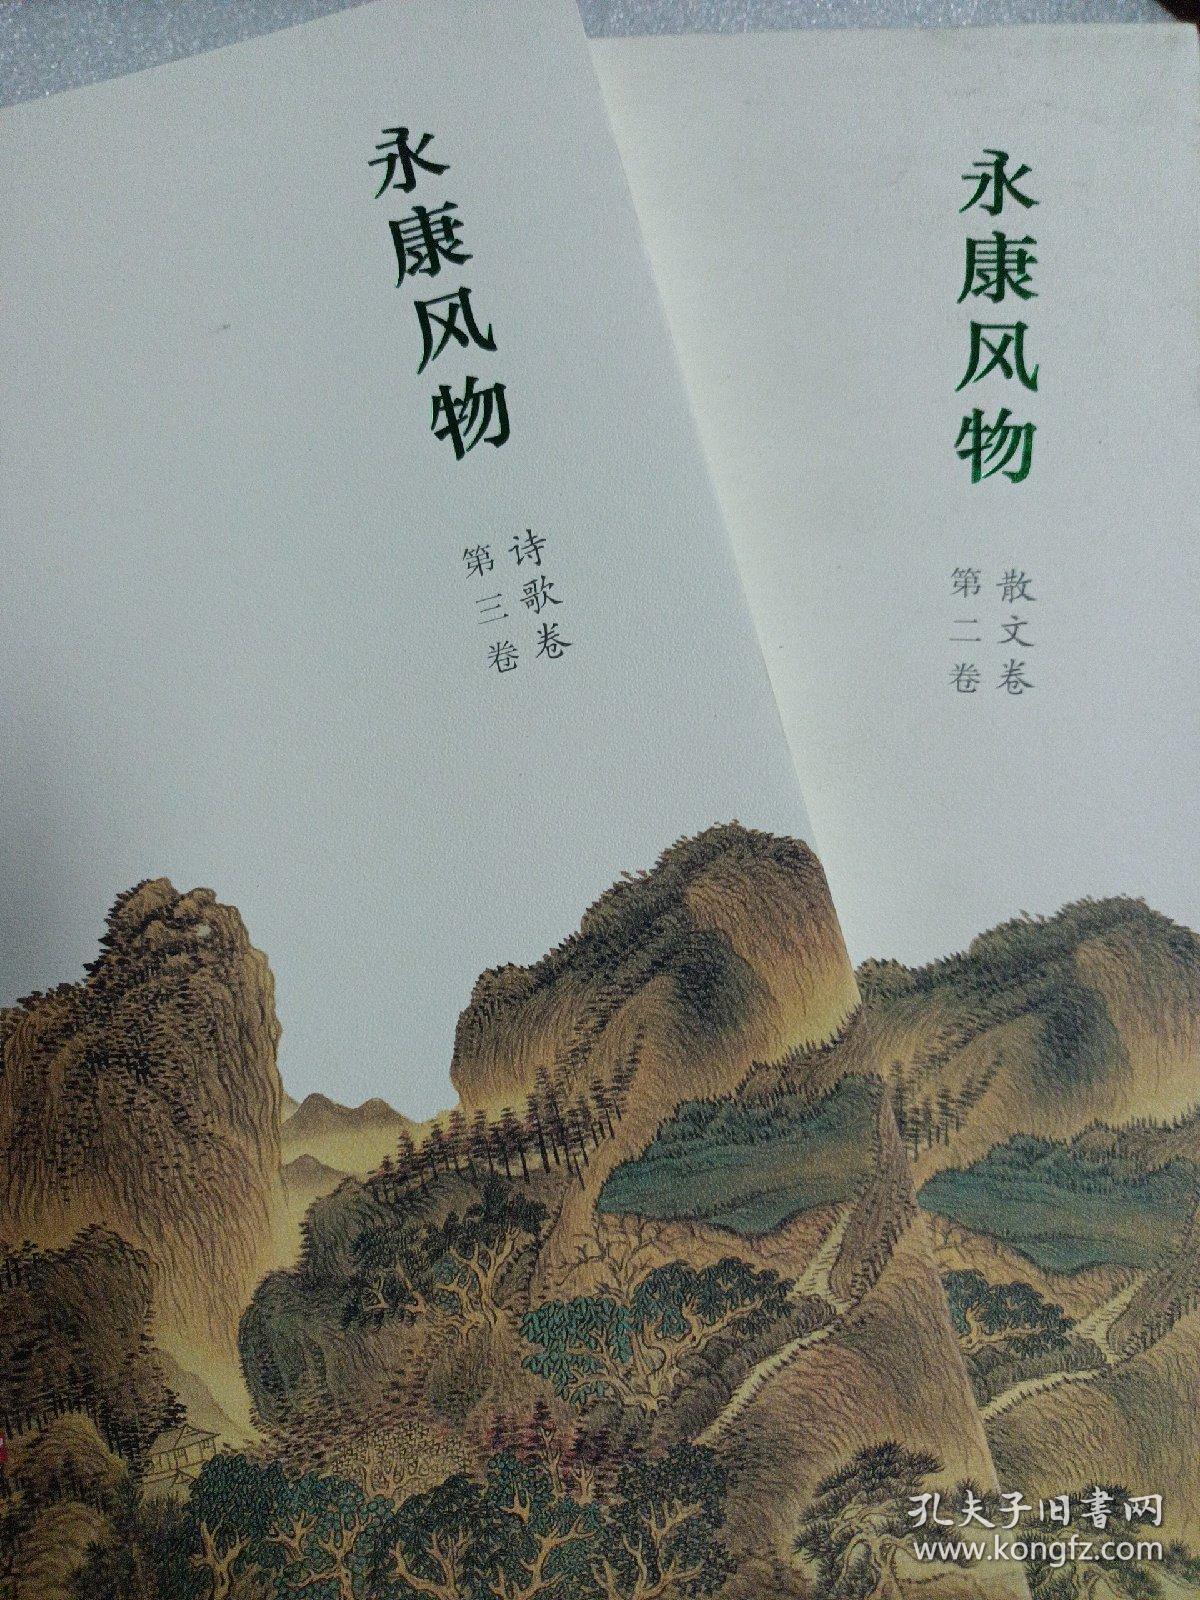 2厚本合拍 浙江金华 永康风物诗歌卷 散文卷 共两册 原价98元  上海文化出版社 一版一印 印量很少